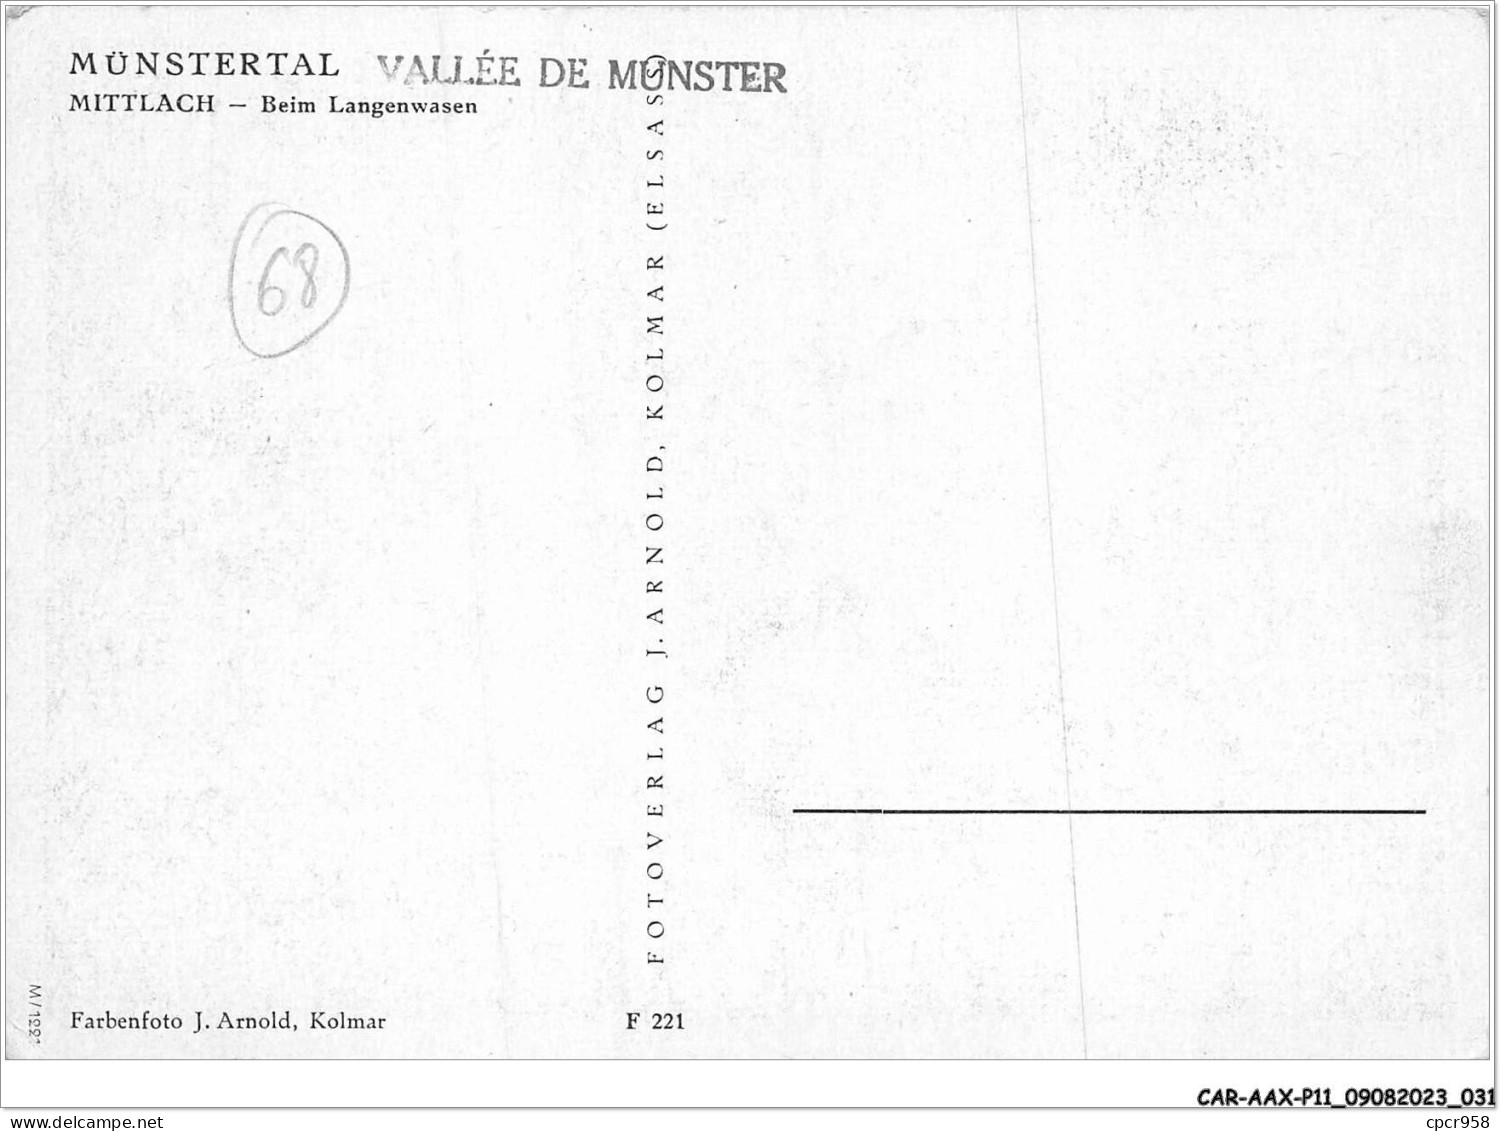 CAR-AAX-P11-68-0813 - MUNSTERTAL VALLEE DE MUNSTER - MITTLACH - Beim Langenwassen - Munster